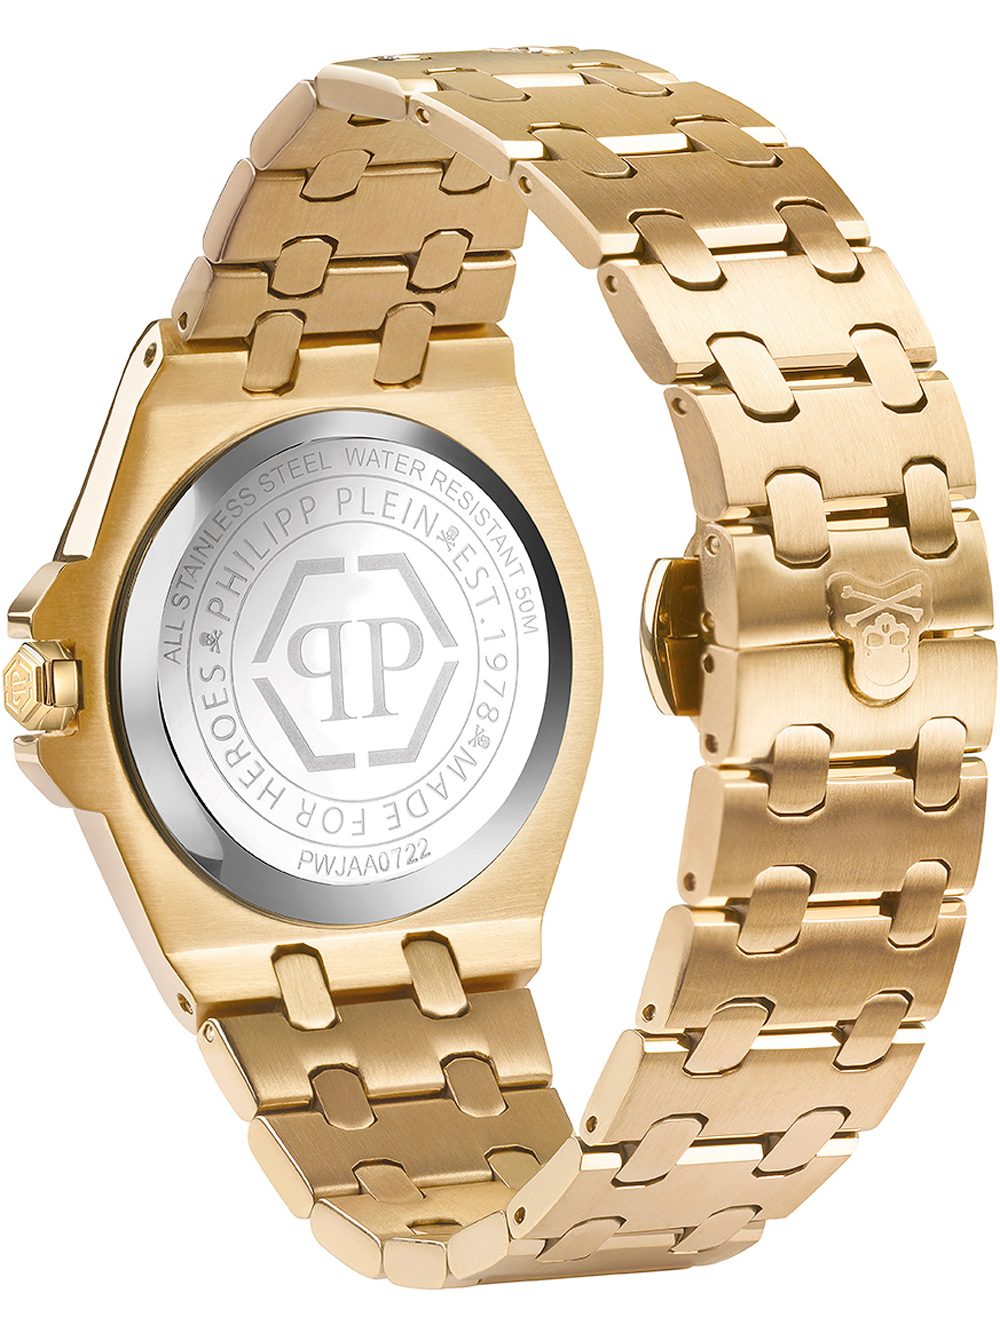 Zegarek damski Philipp Plein PWJAA0722  Plein Extreme złoty